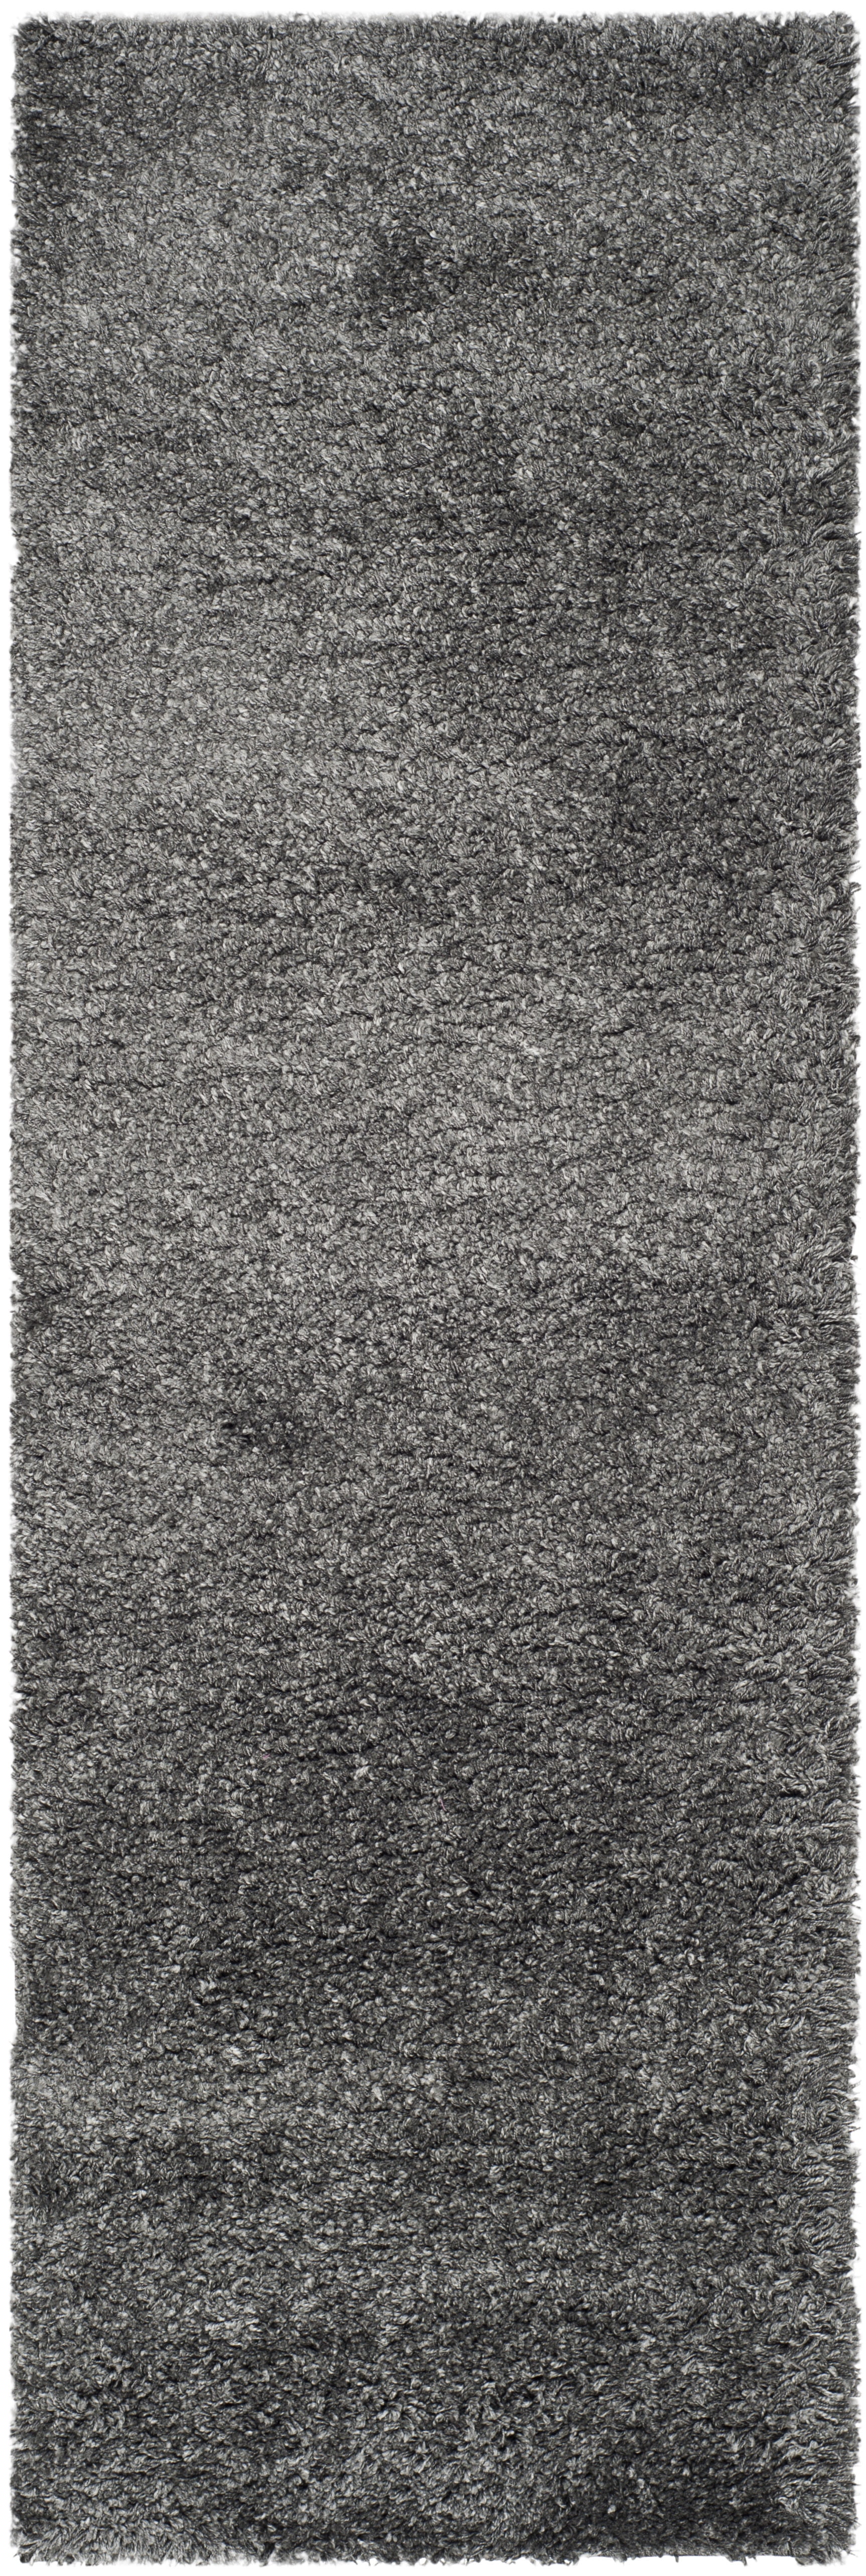 SAFAVIEH California Solid Plush Shag Runner Rug, Dark Grey, 2'3" x 13' - image 1 of 11